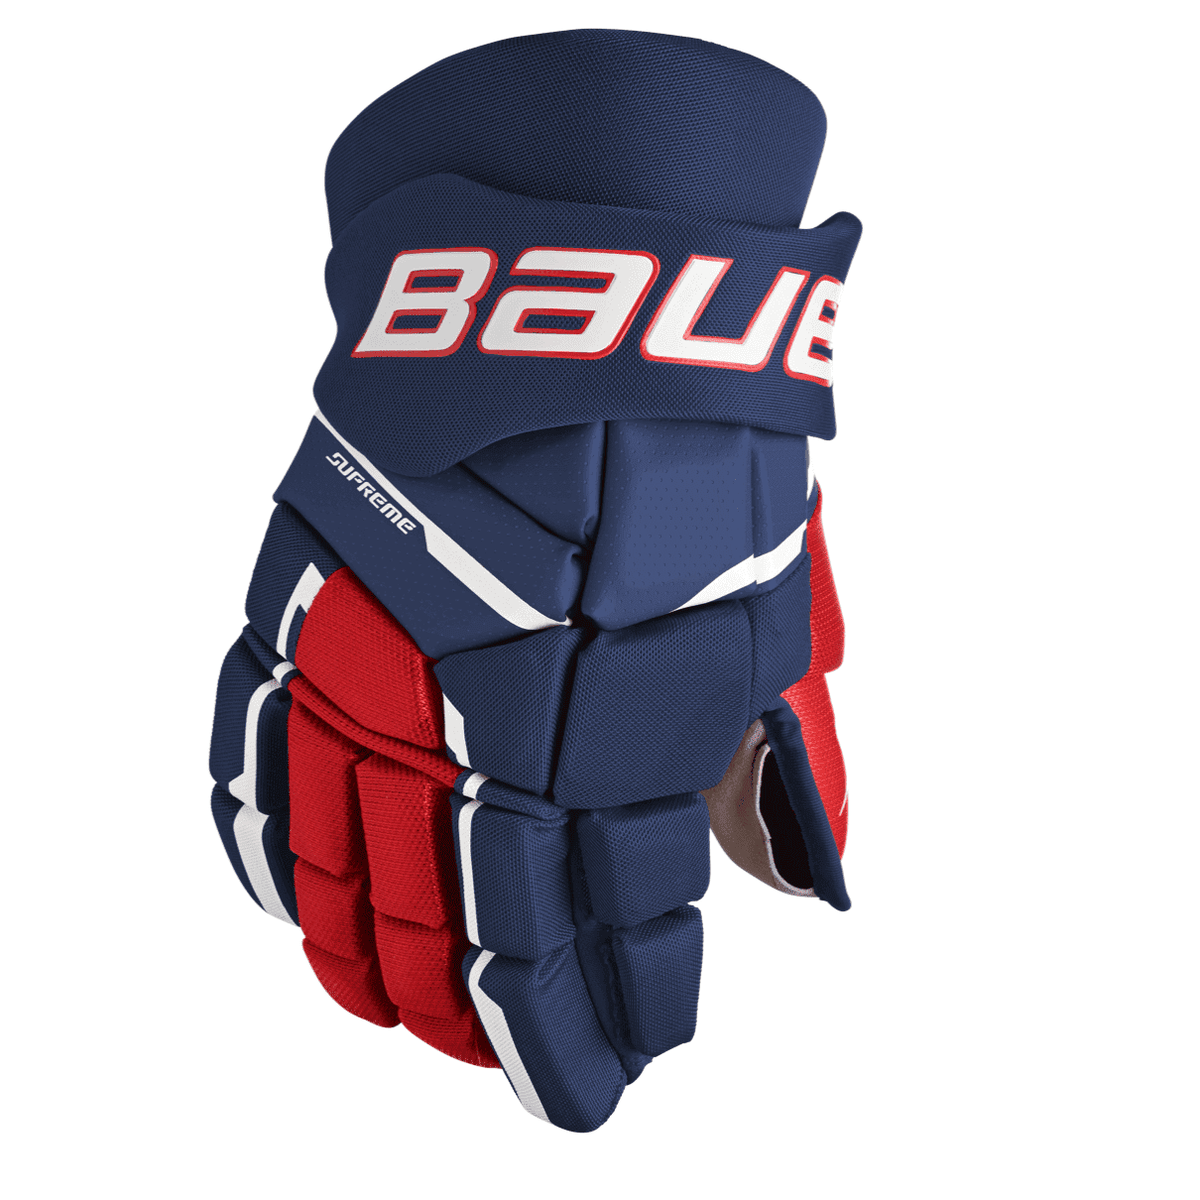 Bauer Supreme M3 Hockey Gloves Intermediate